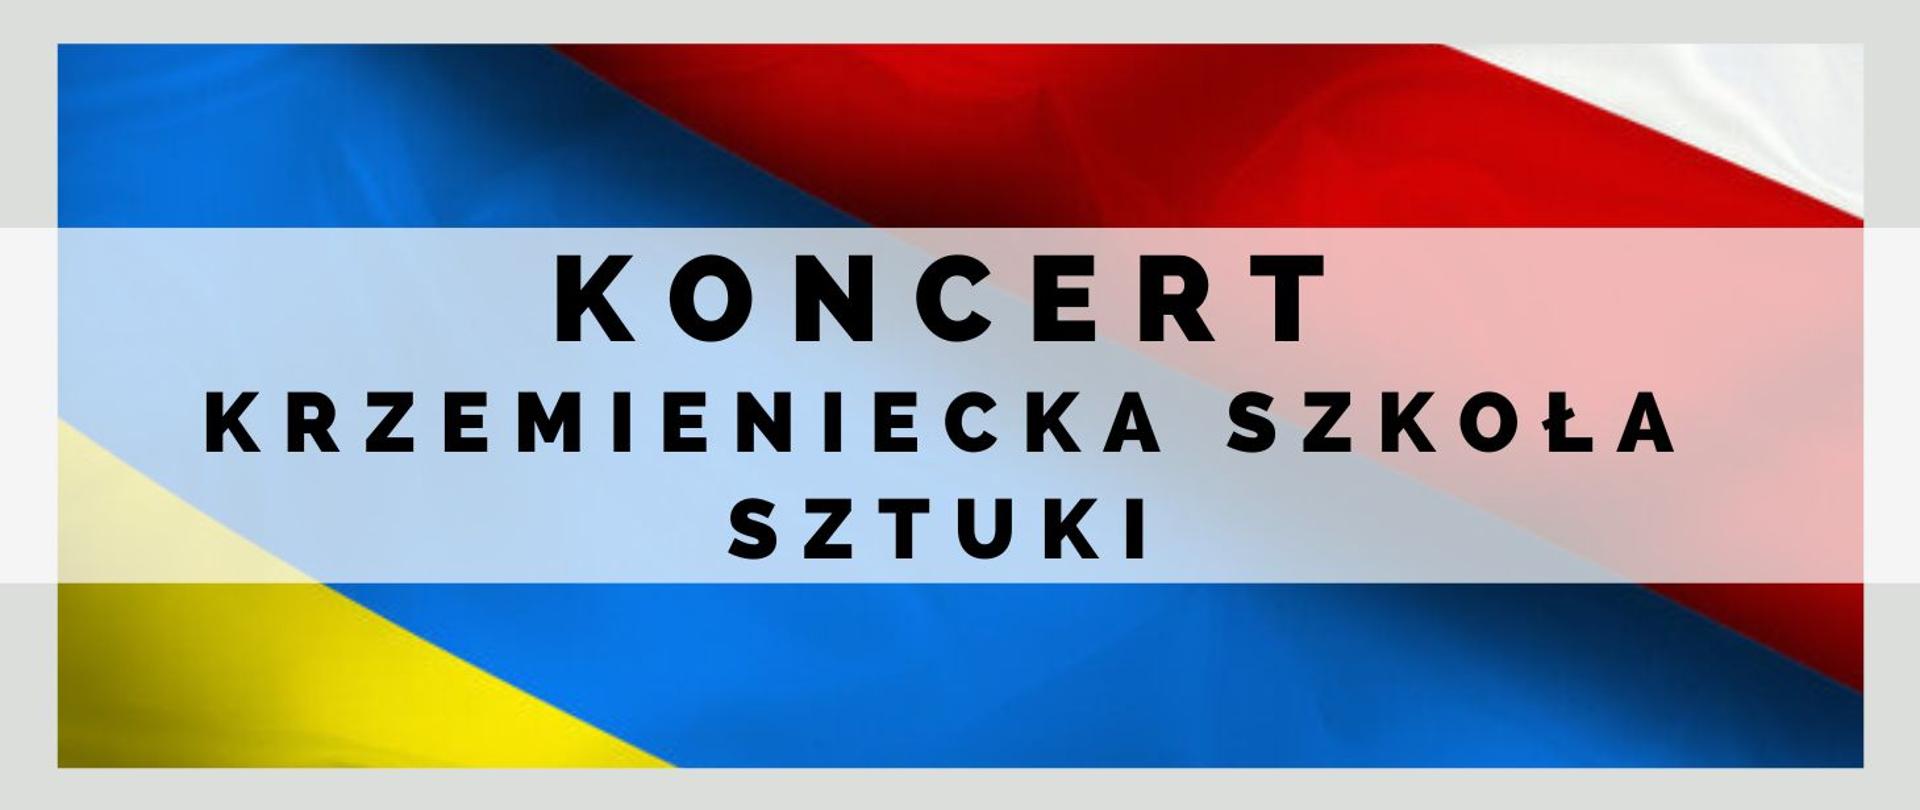 Panorama , połączone flagi narodowe Polski i Ukrainy. Na ich tle czarnymi literami Koncert Krzemieniecka szkoła sztuki.